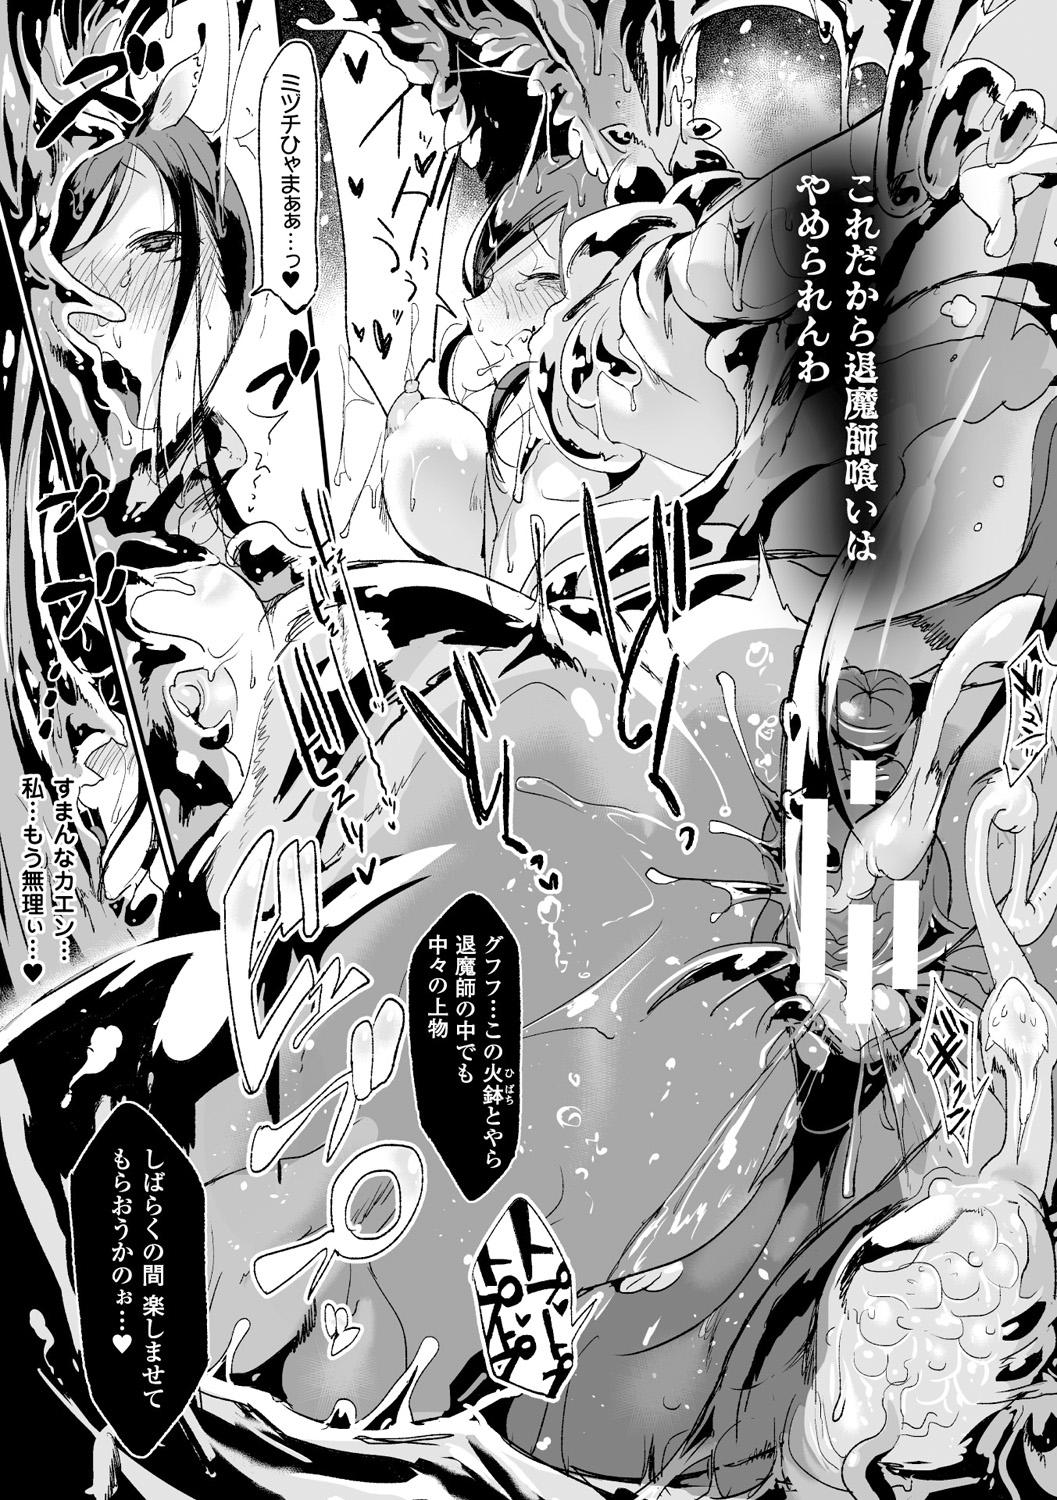 Bessatsu Comic Unreal Monster Musume Paradise Digital Ban Vol. 8 50